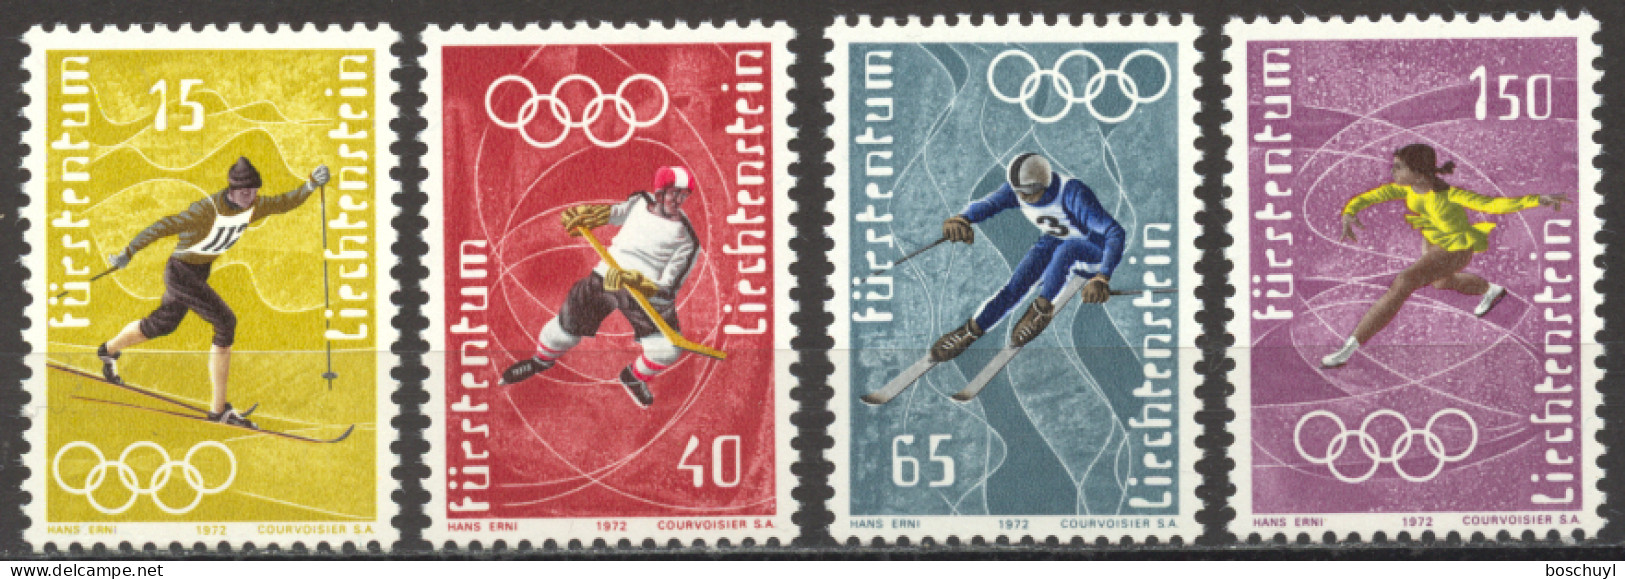 Liechtenstein, 1971, Olympic Winter Games Sapporo, Sports, MNH, Michel 551-554 - Ungebraucht